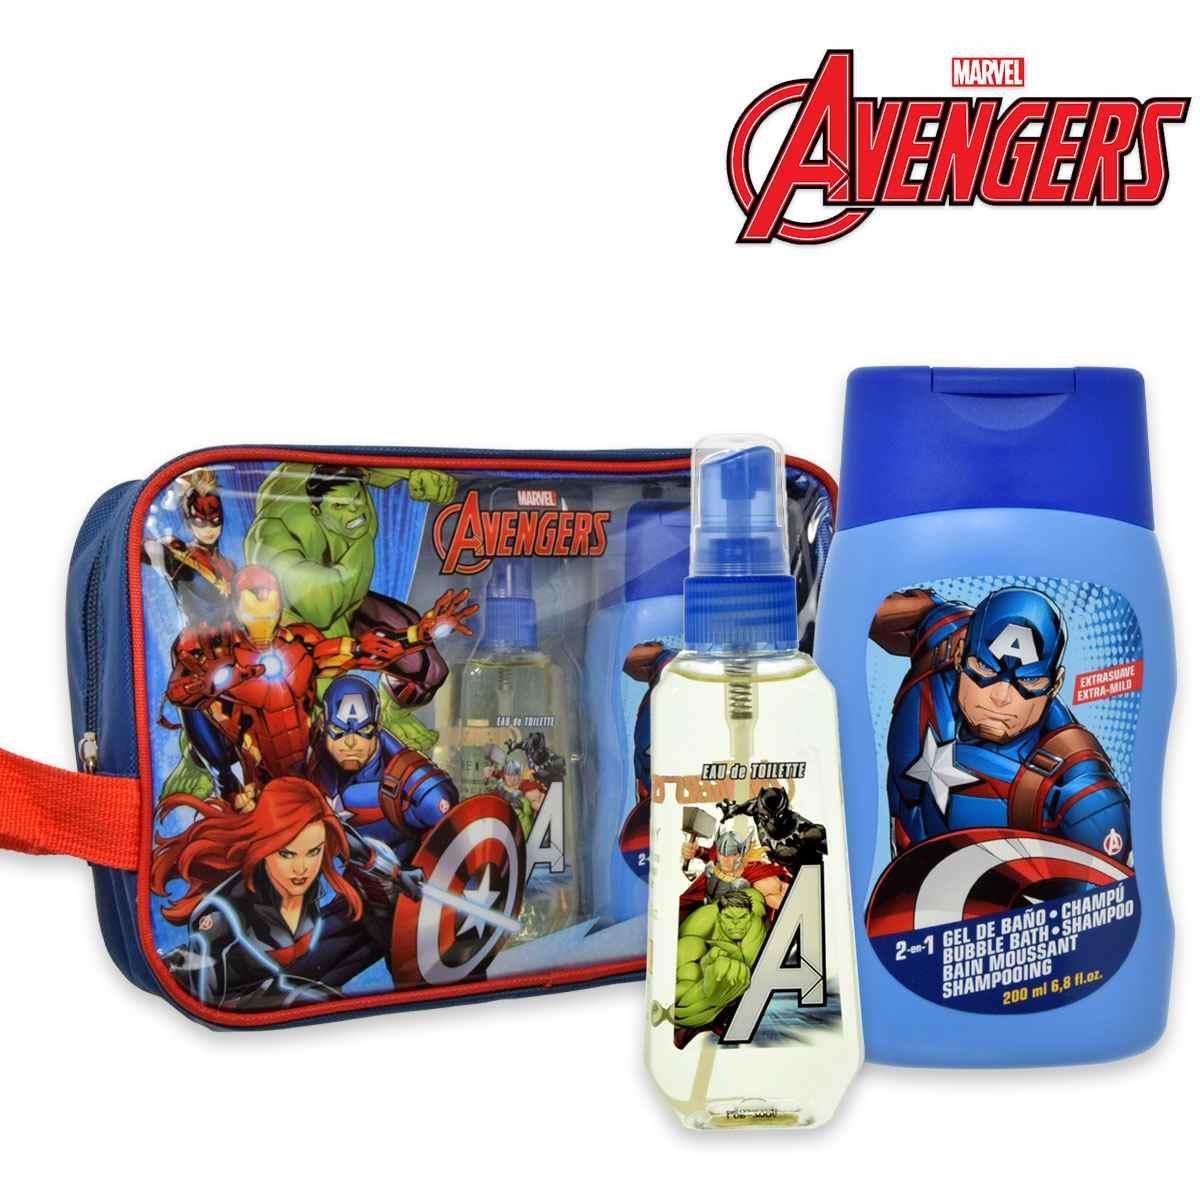 Avengers confezione regalo edt 90 ml + shower gel 200 ml + astuccio